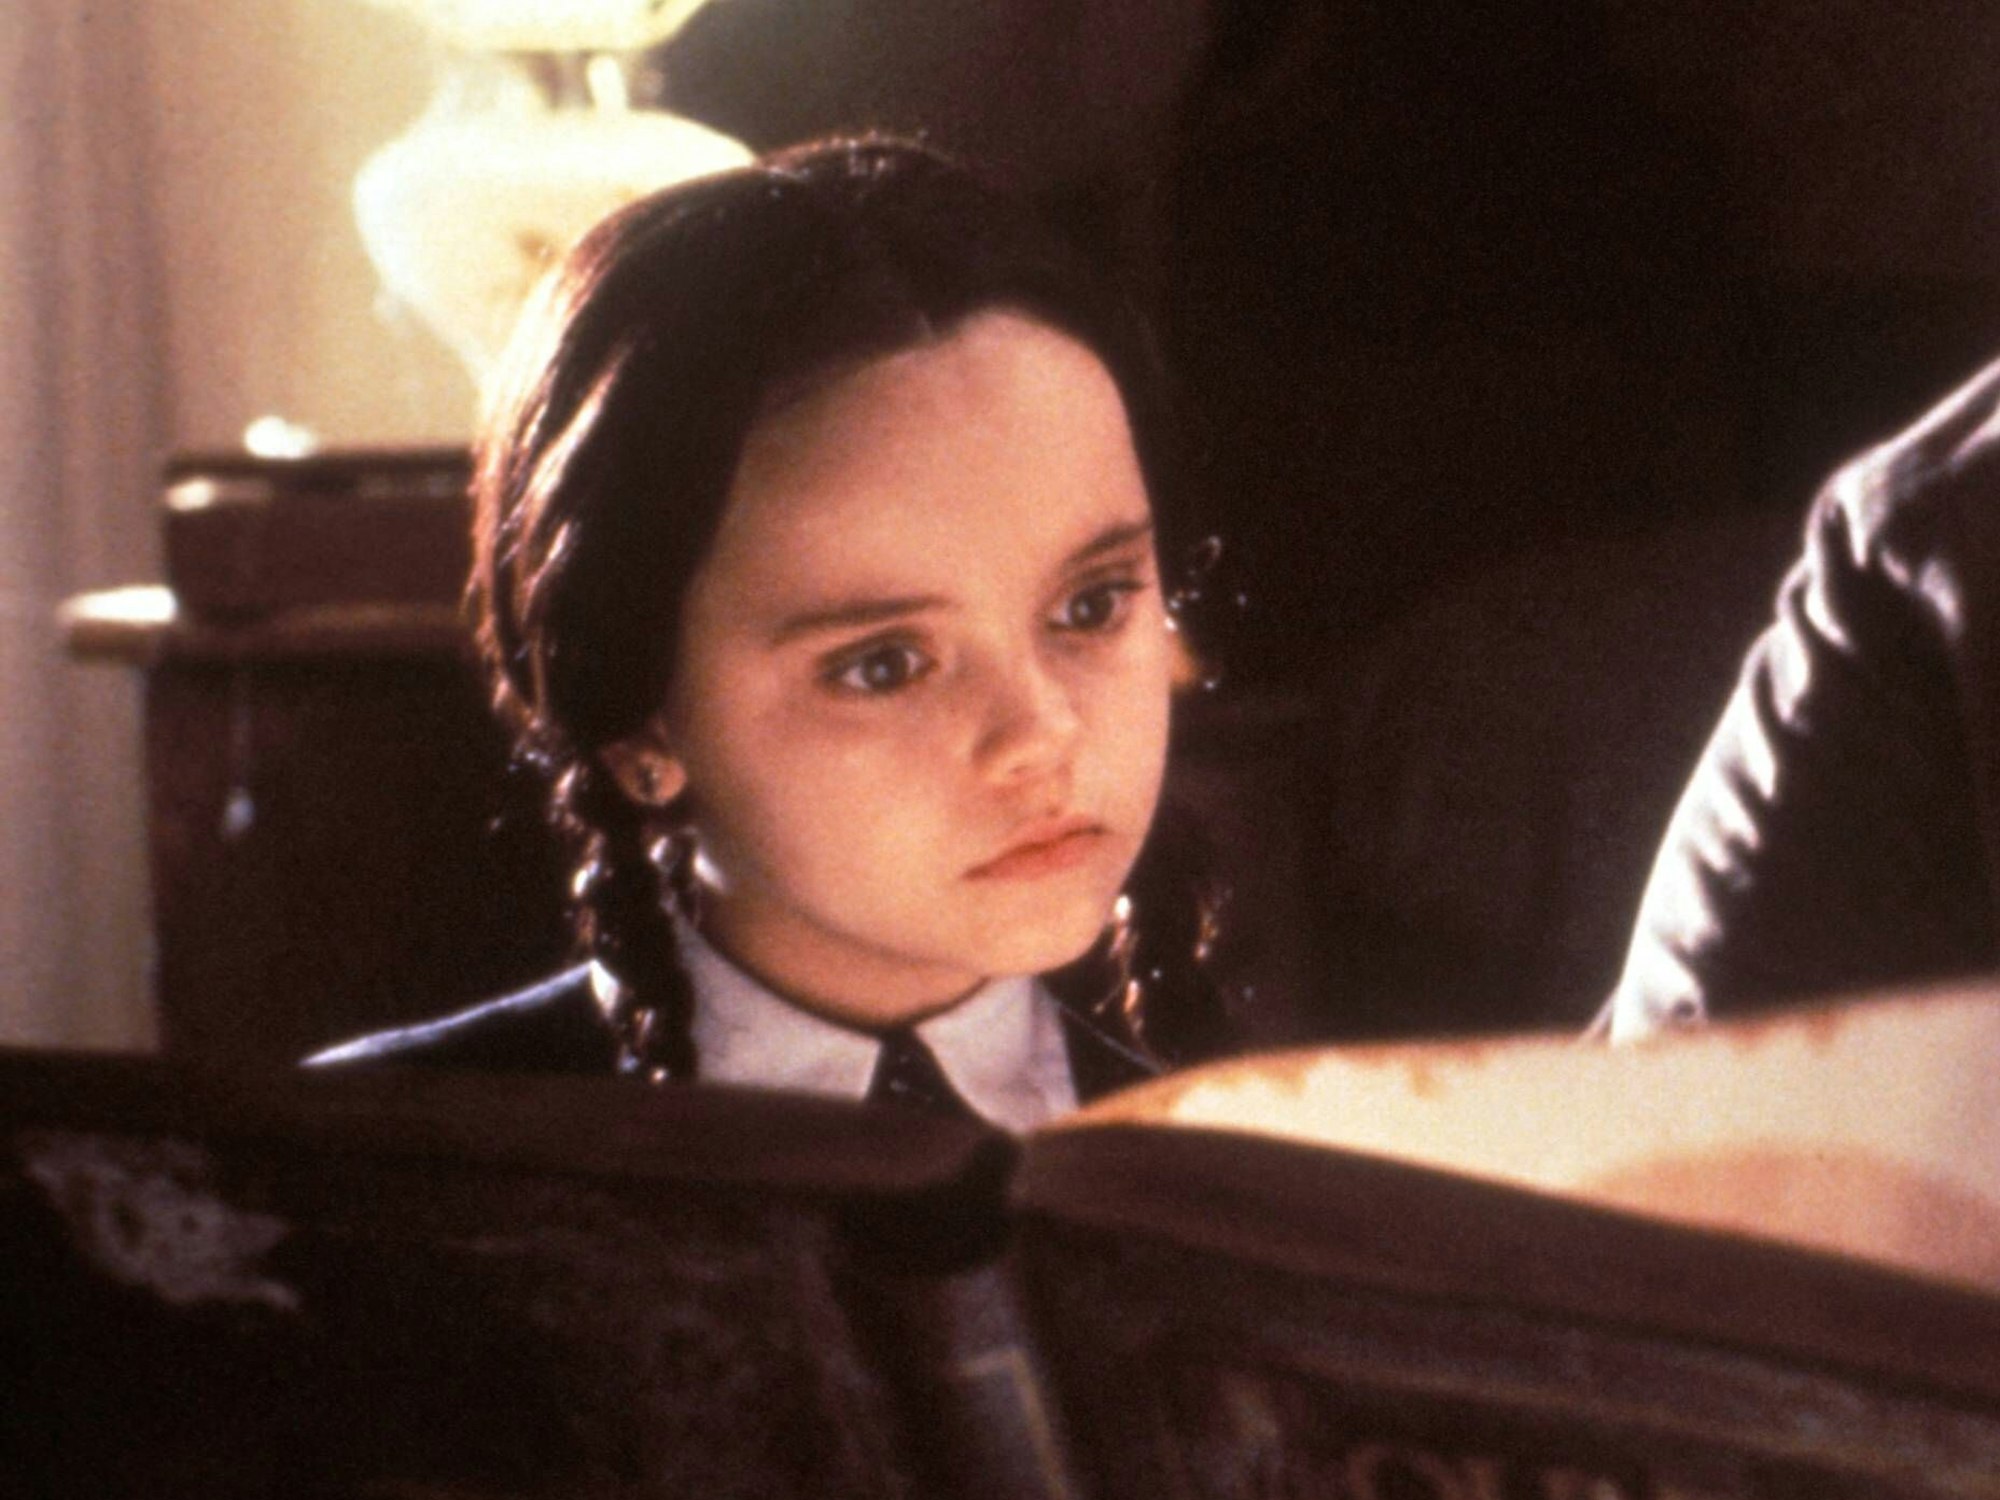 Christina Ricci in ihrer Rolle als "Wednesday Addams" in dem Film "Addams Family" (1991) schaut sich ein Buch an.